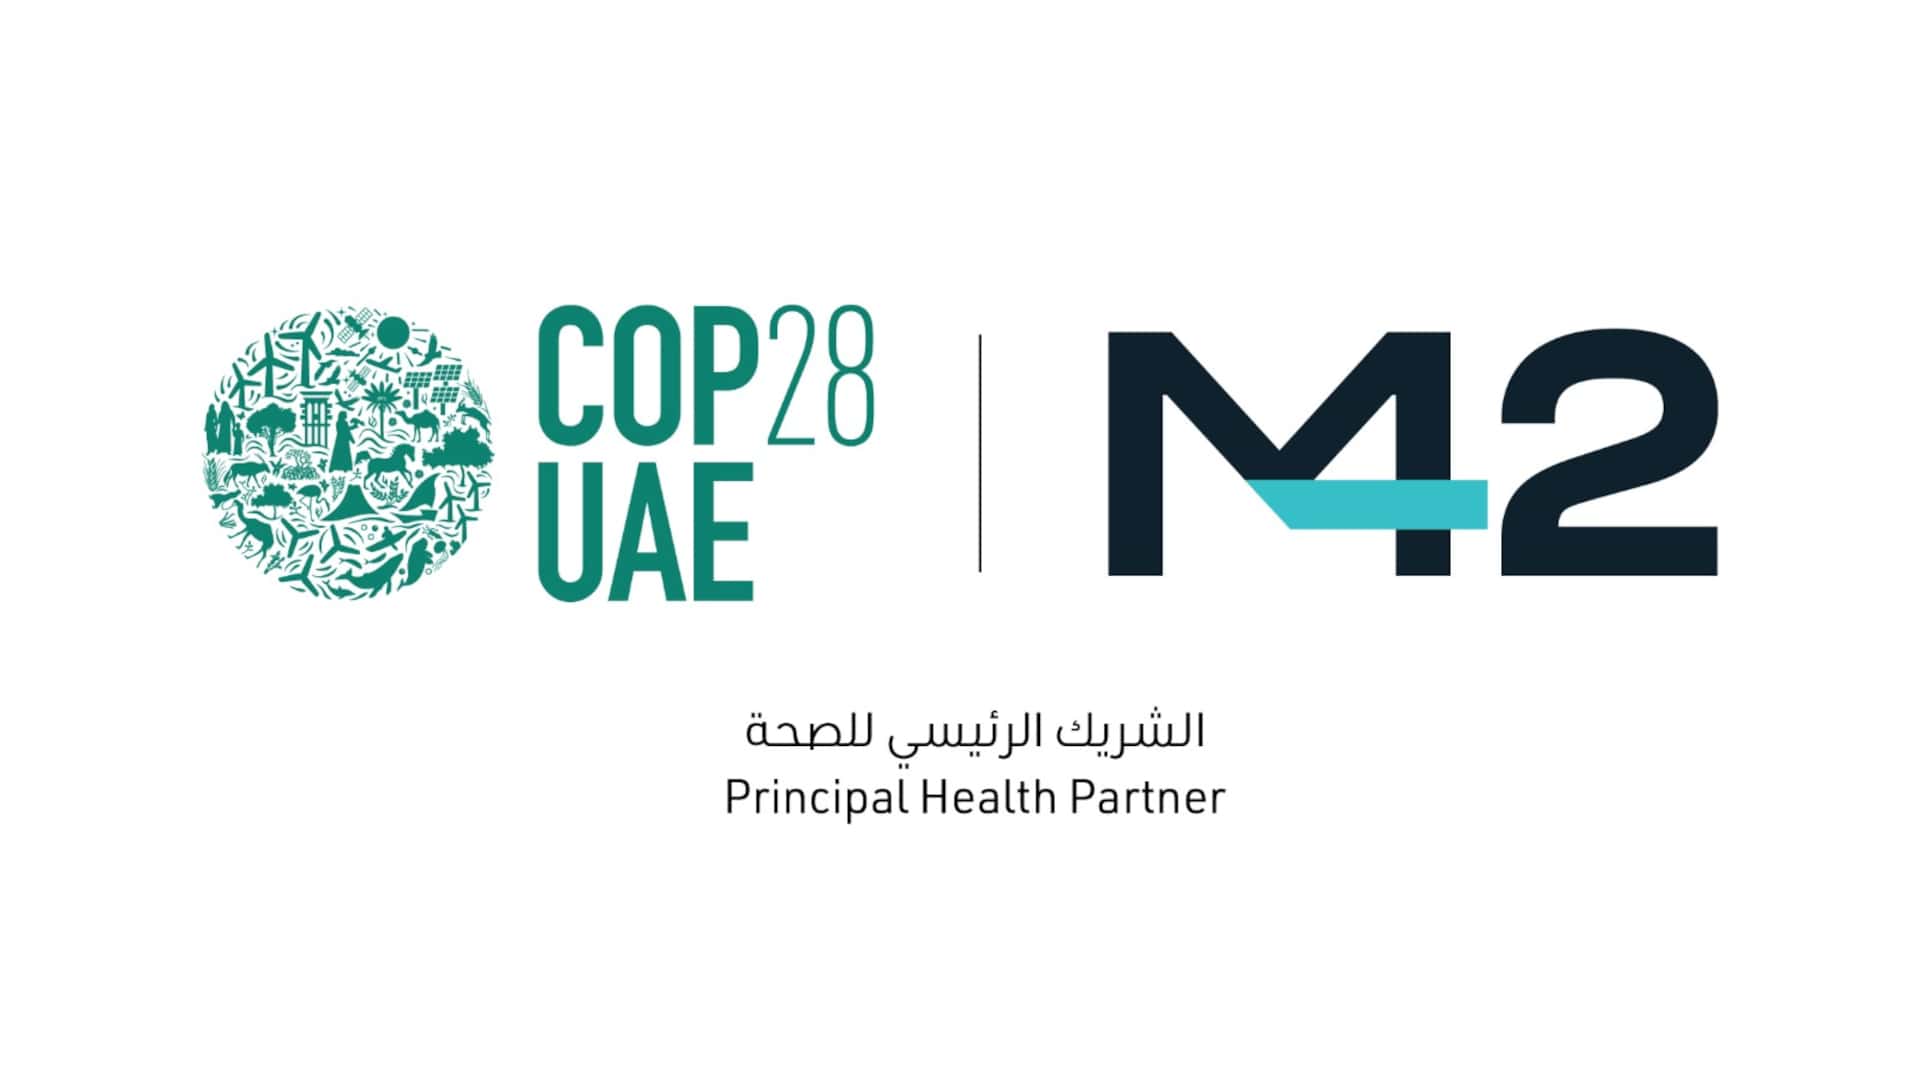 COP28 UAE and M42